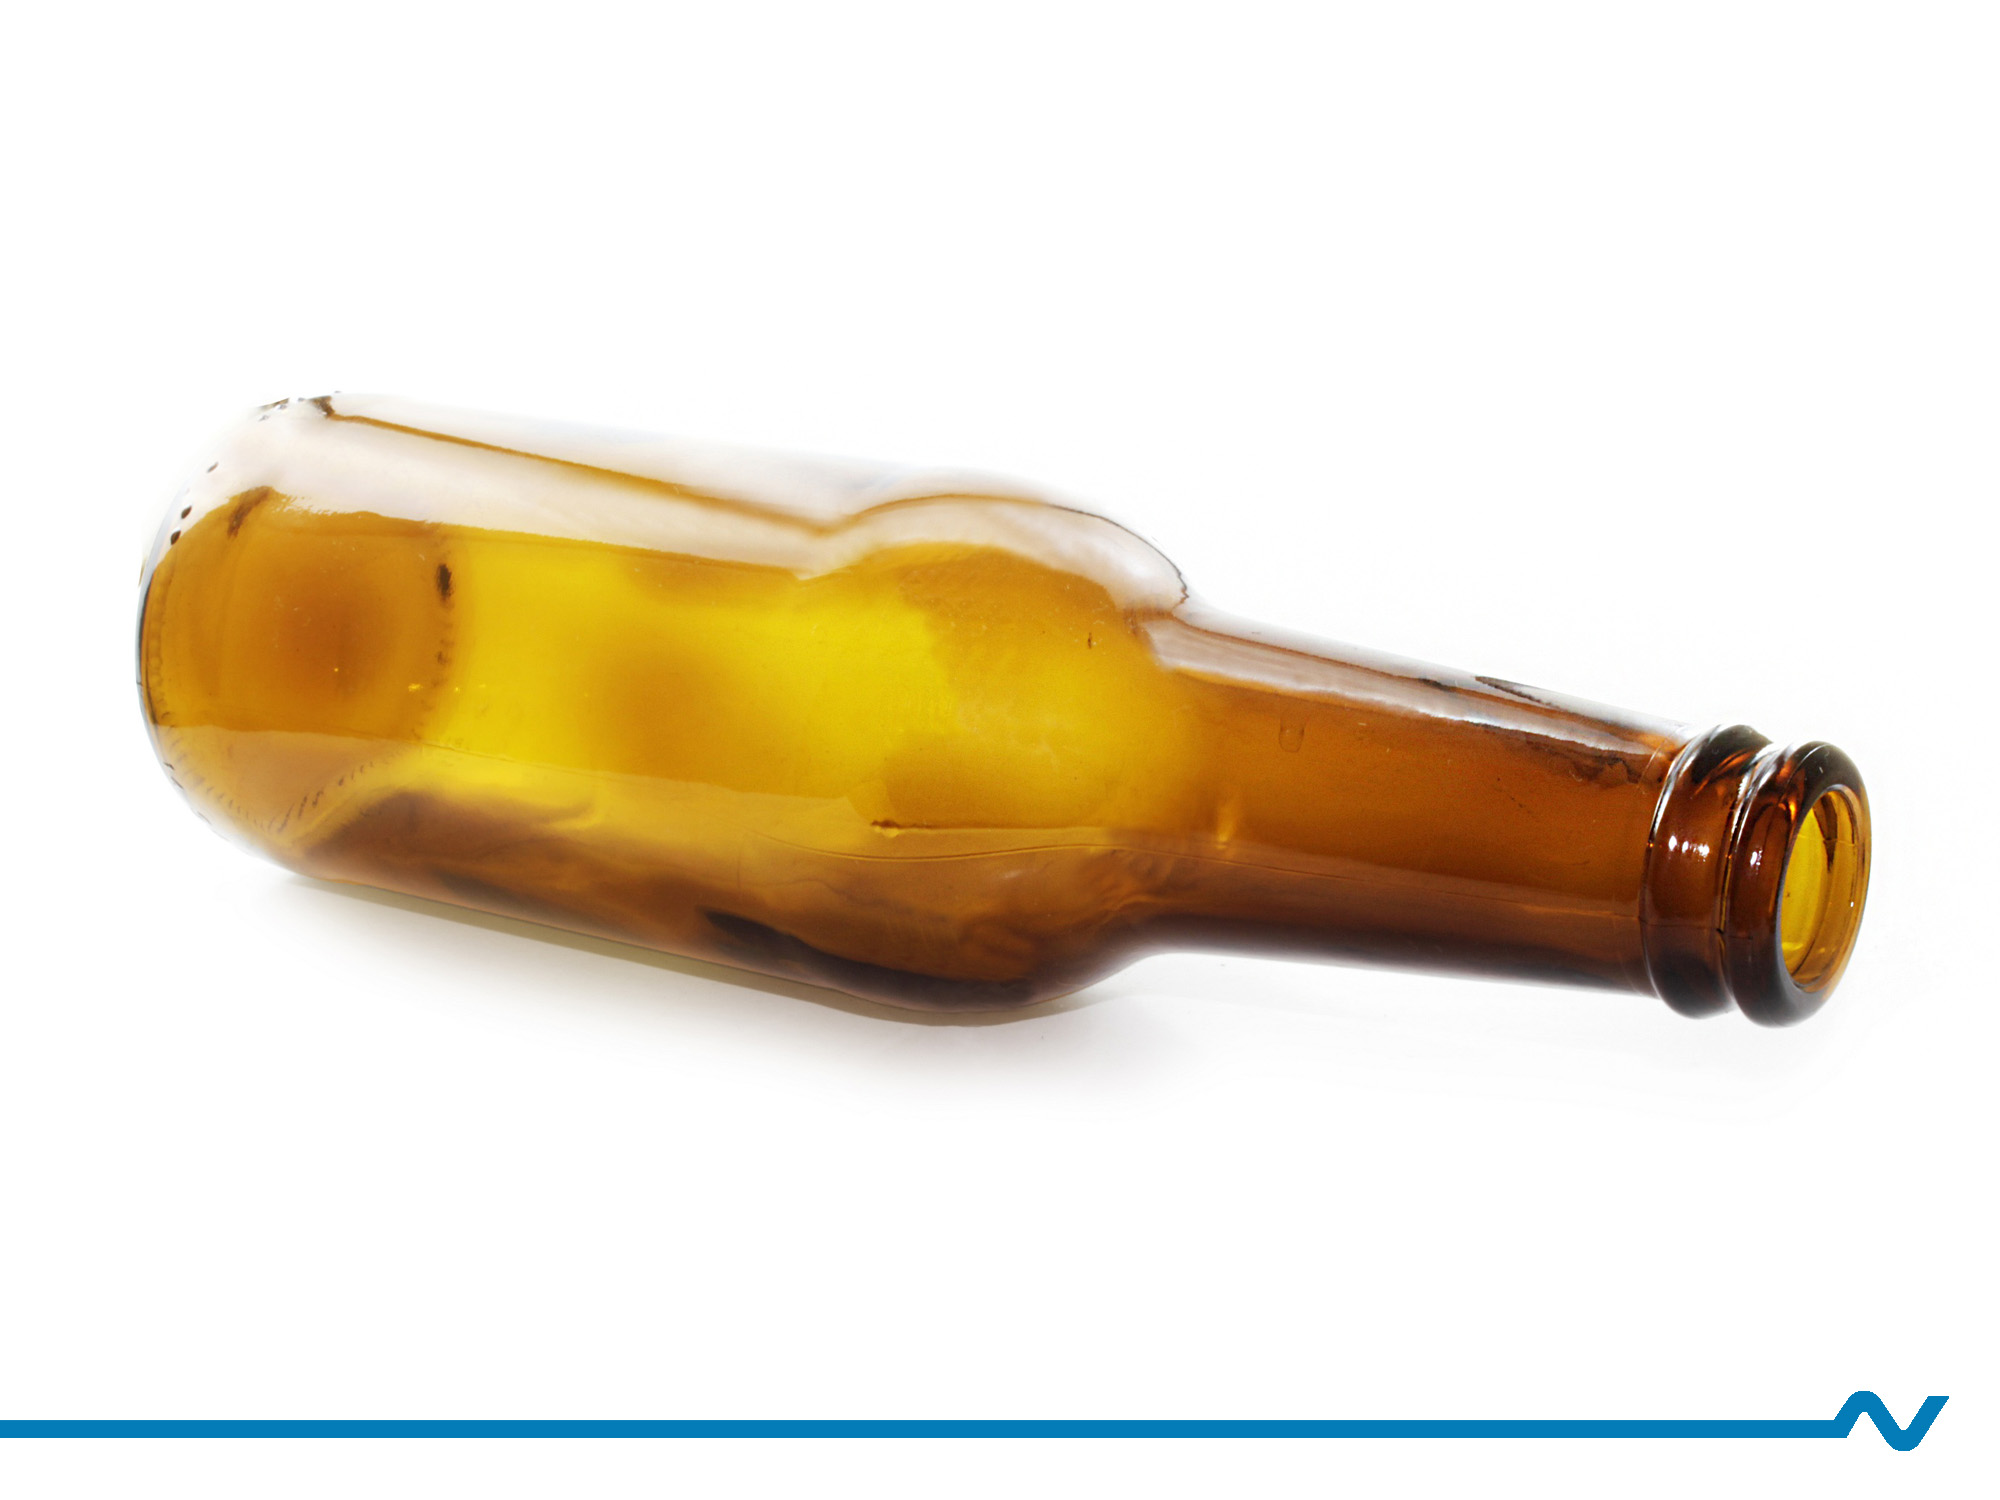 Bierflasche als Symbol für Alkohol am Arbeitsplatz